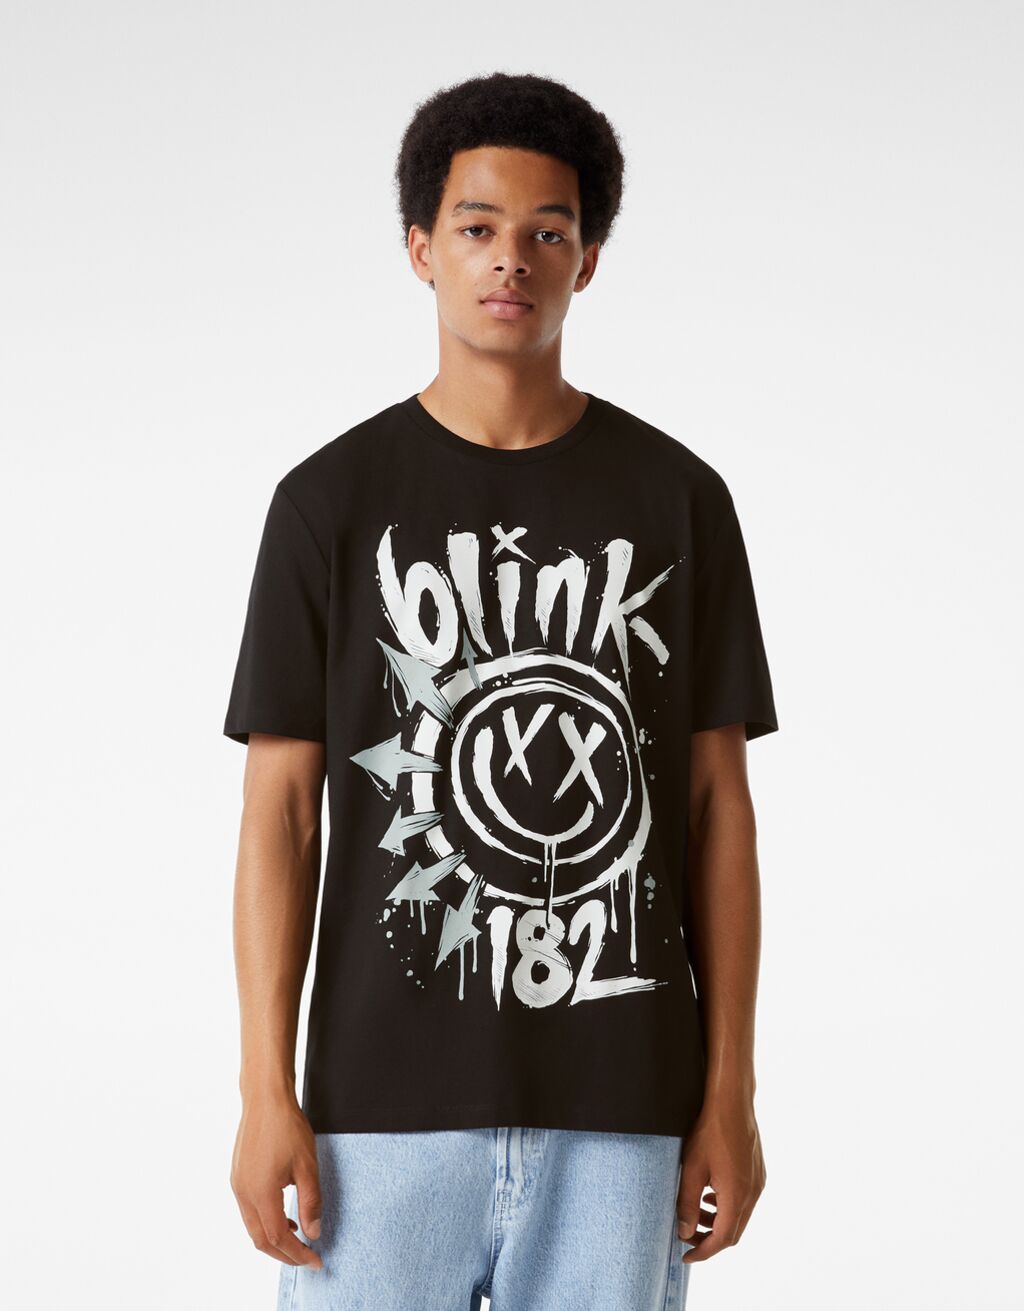 Regular-fit short sleeve T-shirt featuring Blink 182 print